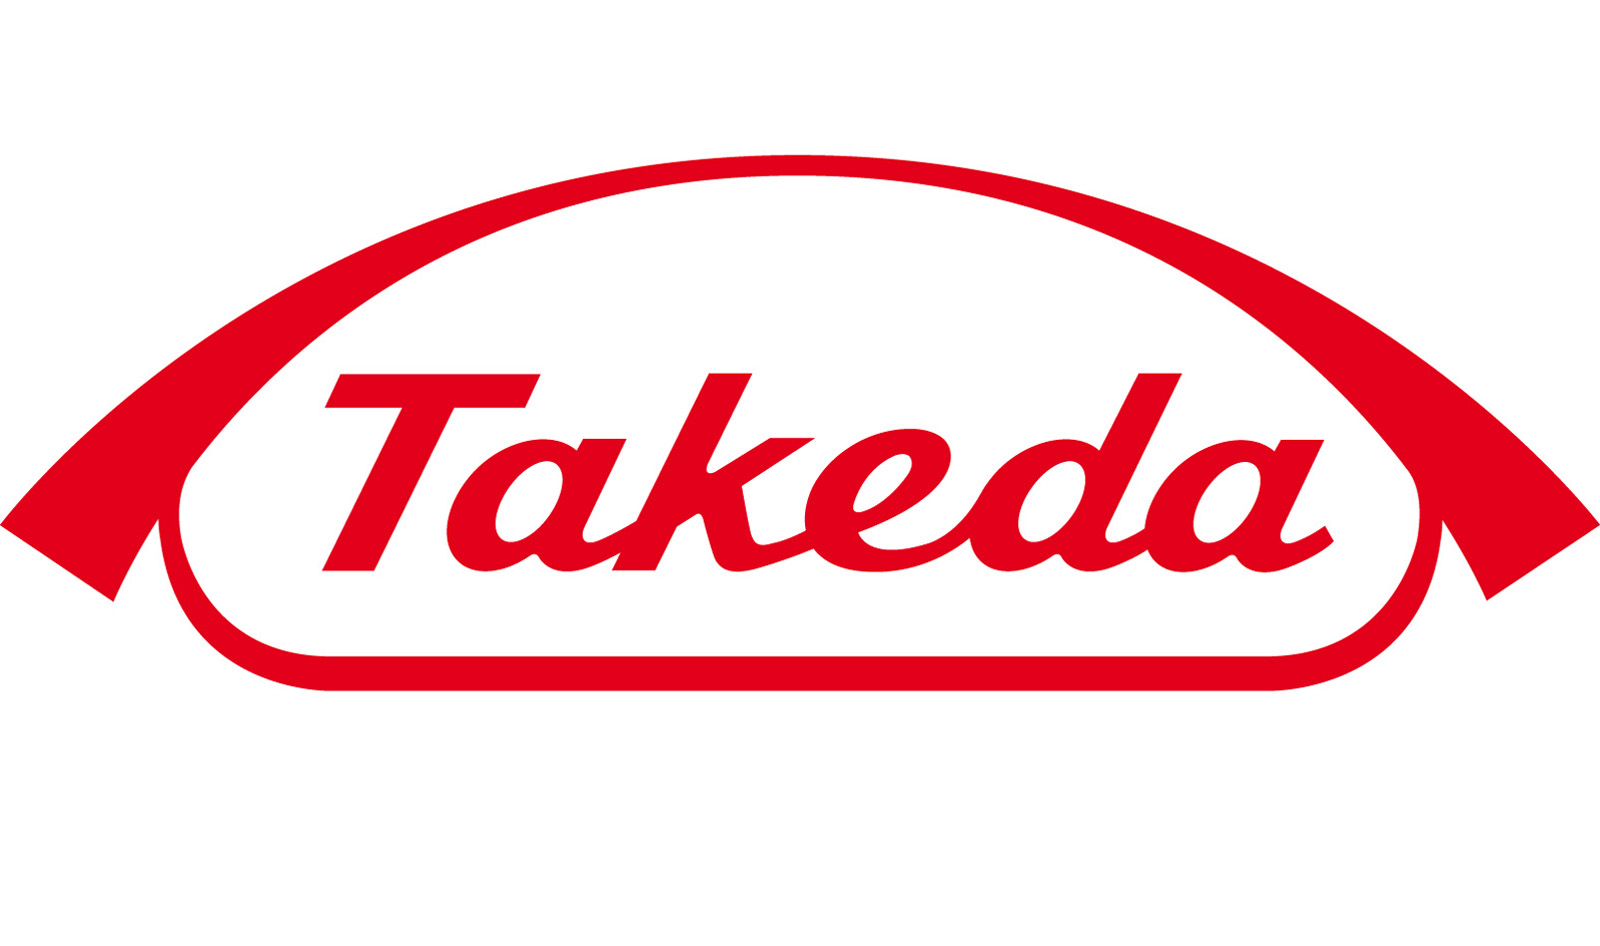 Takeda Pharma Ges.m.b.H.